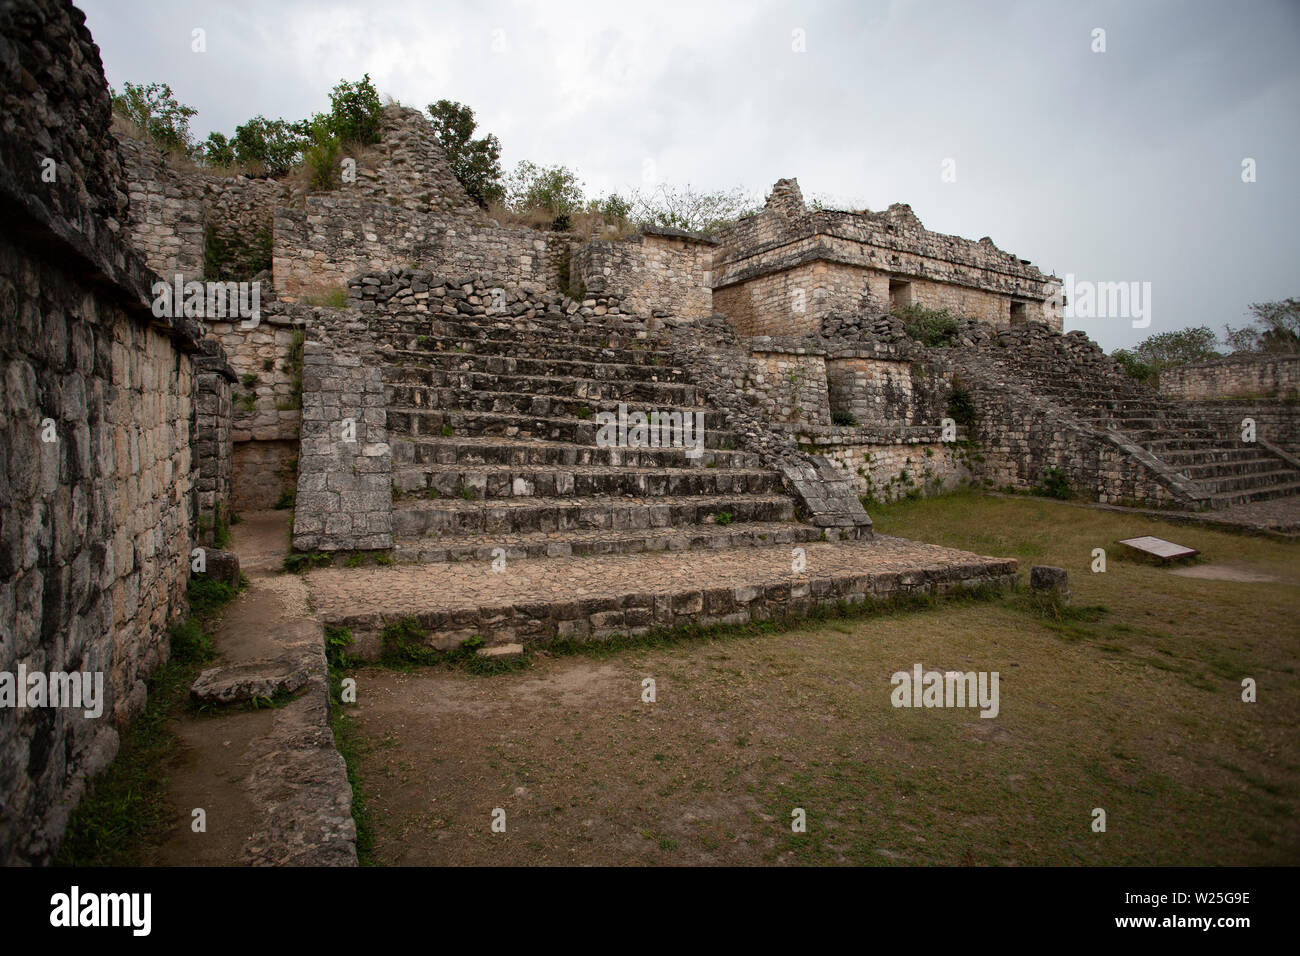 Ruins at Ek Balam, Mexico Stock Photo